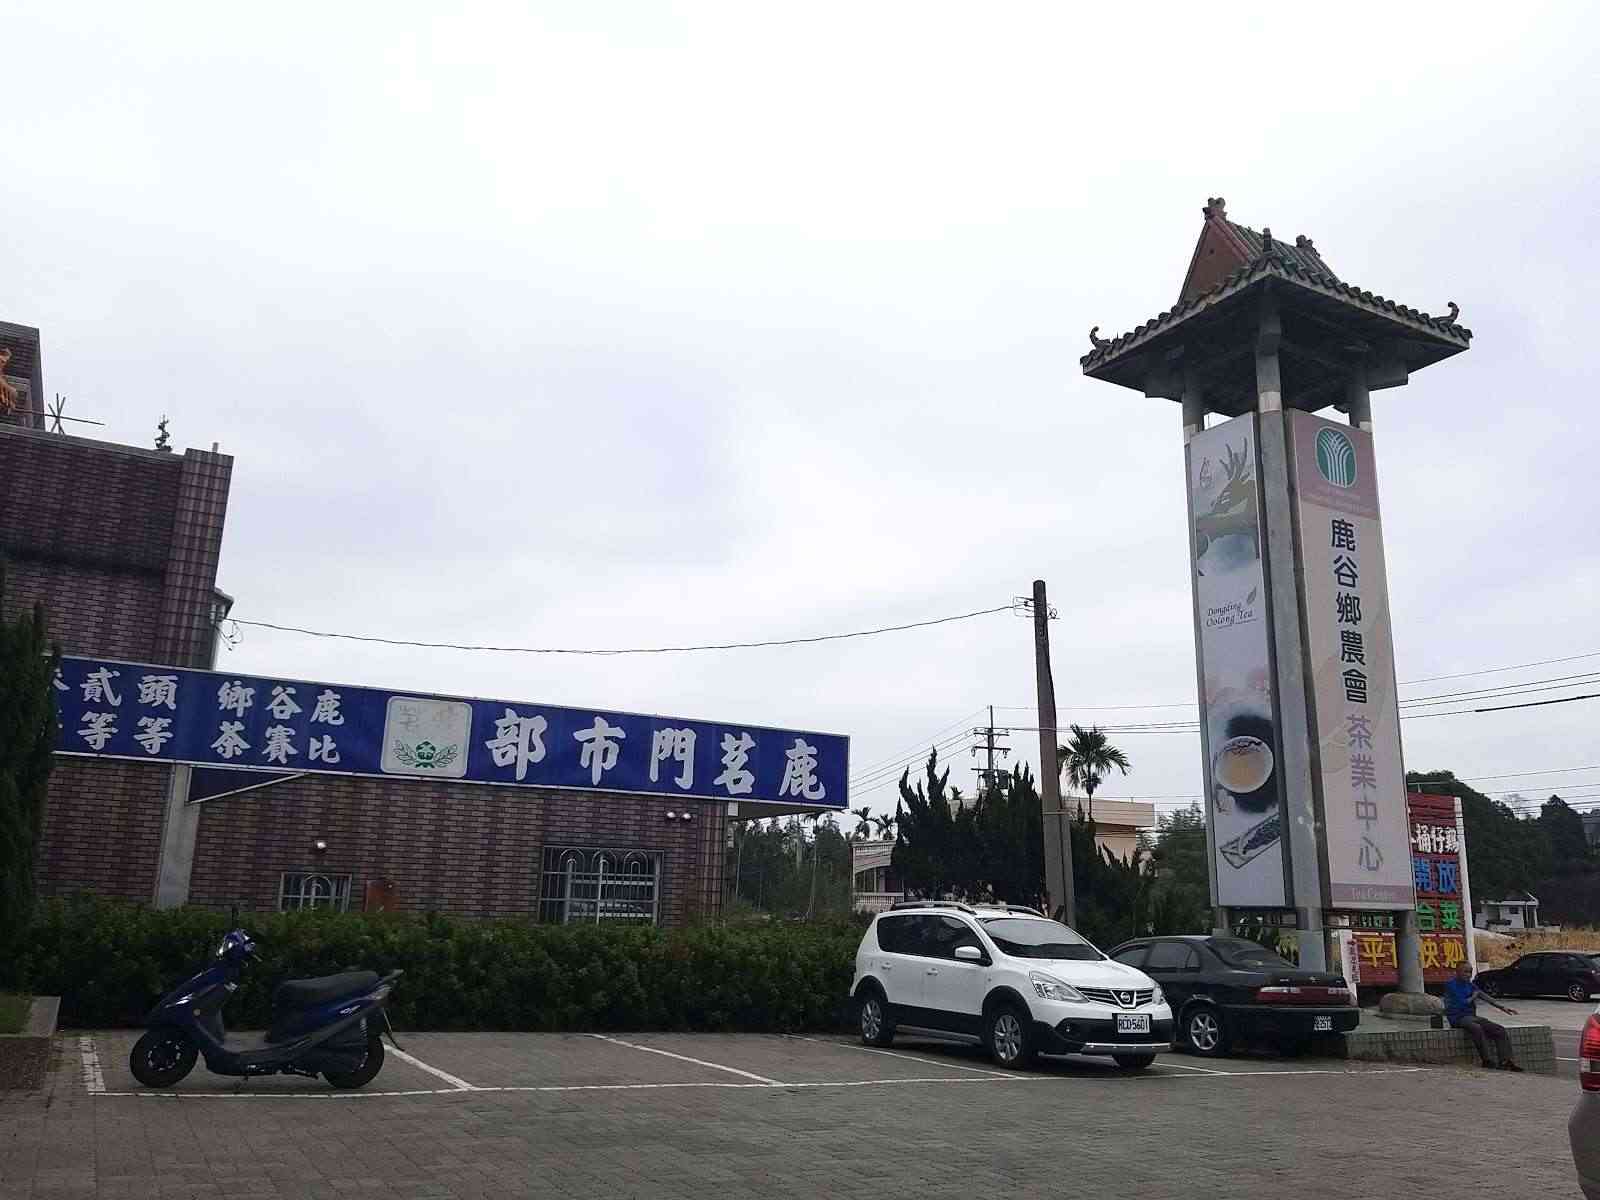 鹿谷鄉農會茶葉文化館/ 攝影者: 龍來鑫

(由第三方資訊提供)